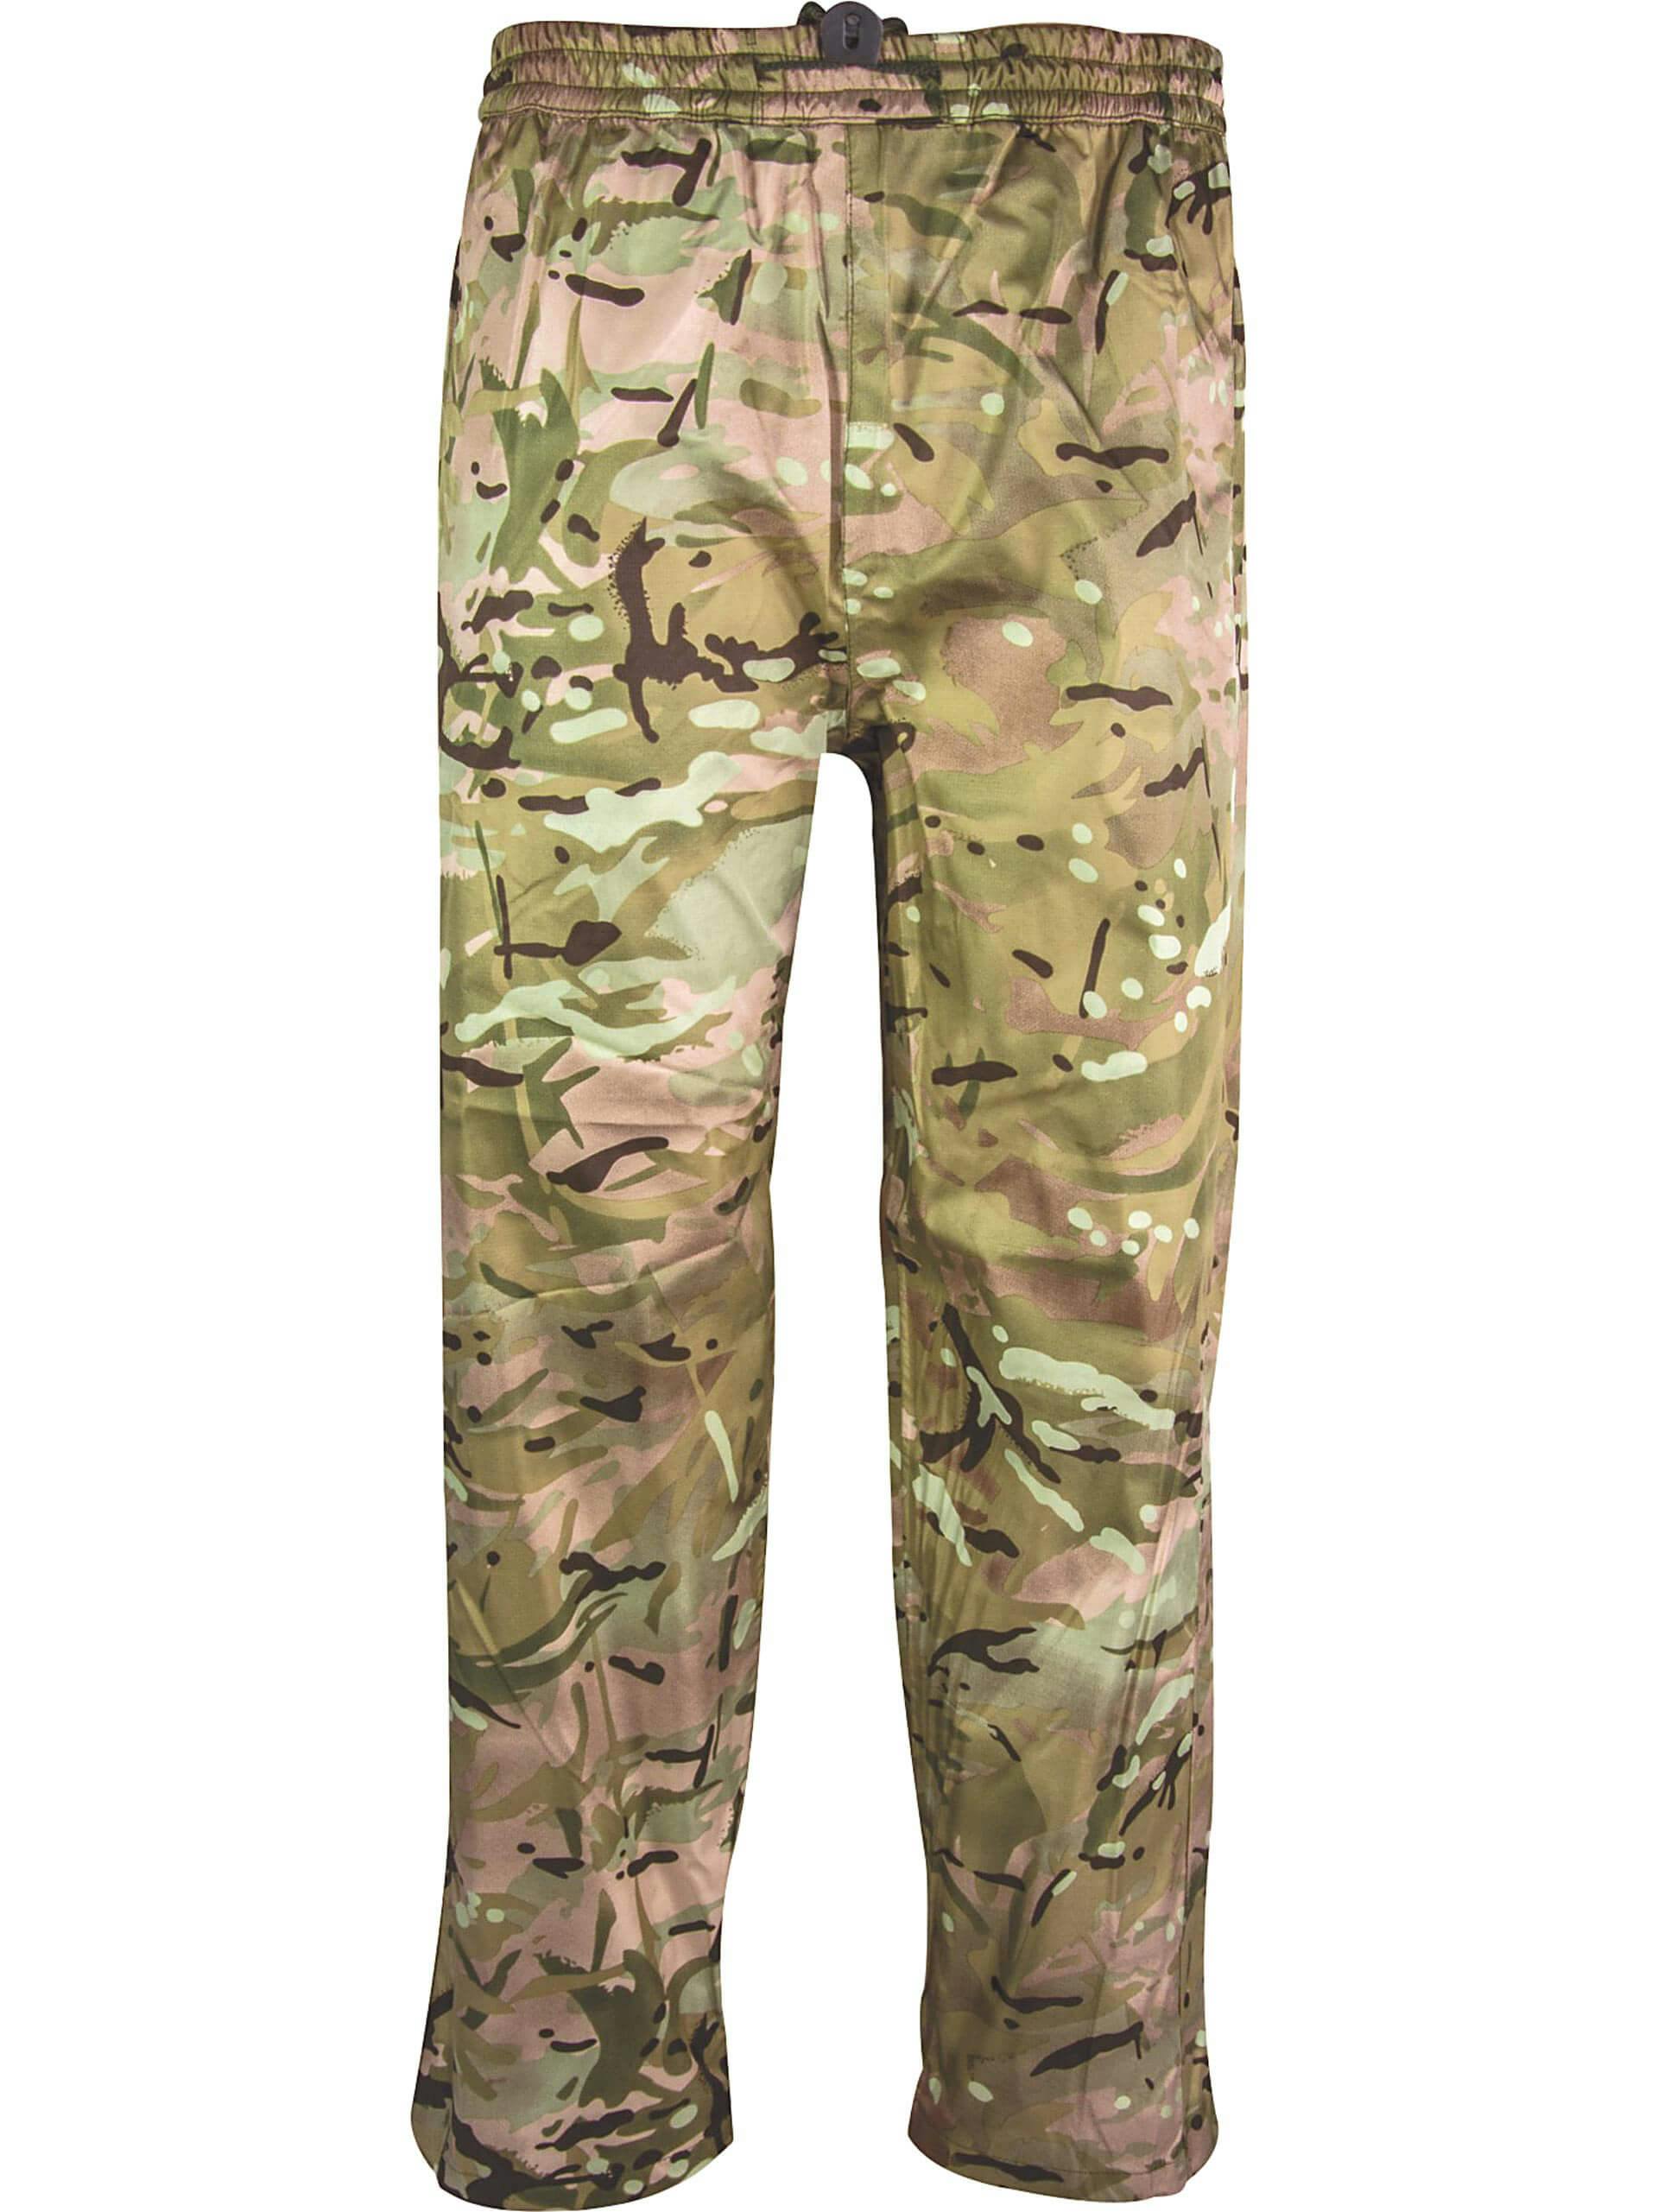 BRITISH ARMY MTP Goretex Trousers Lightweight Waterproof MVP Genuine Issue  2650  PicClick UK